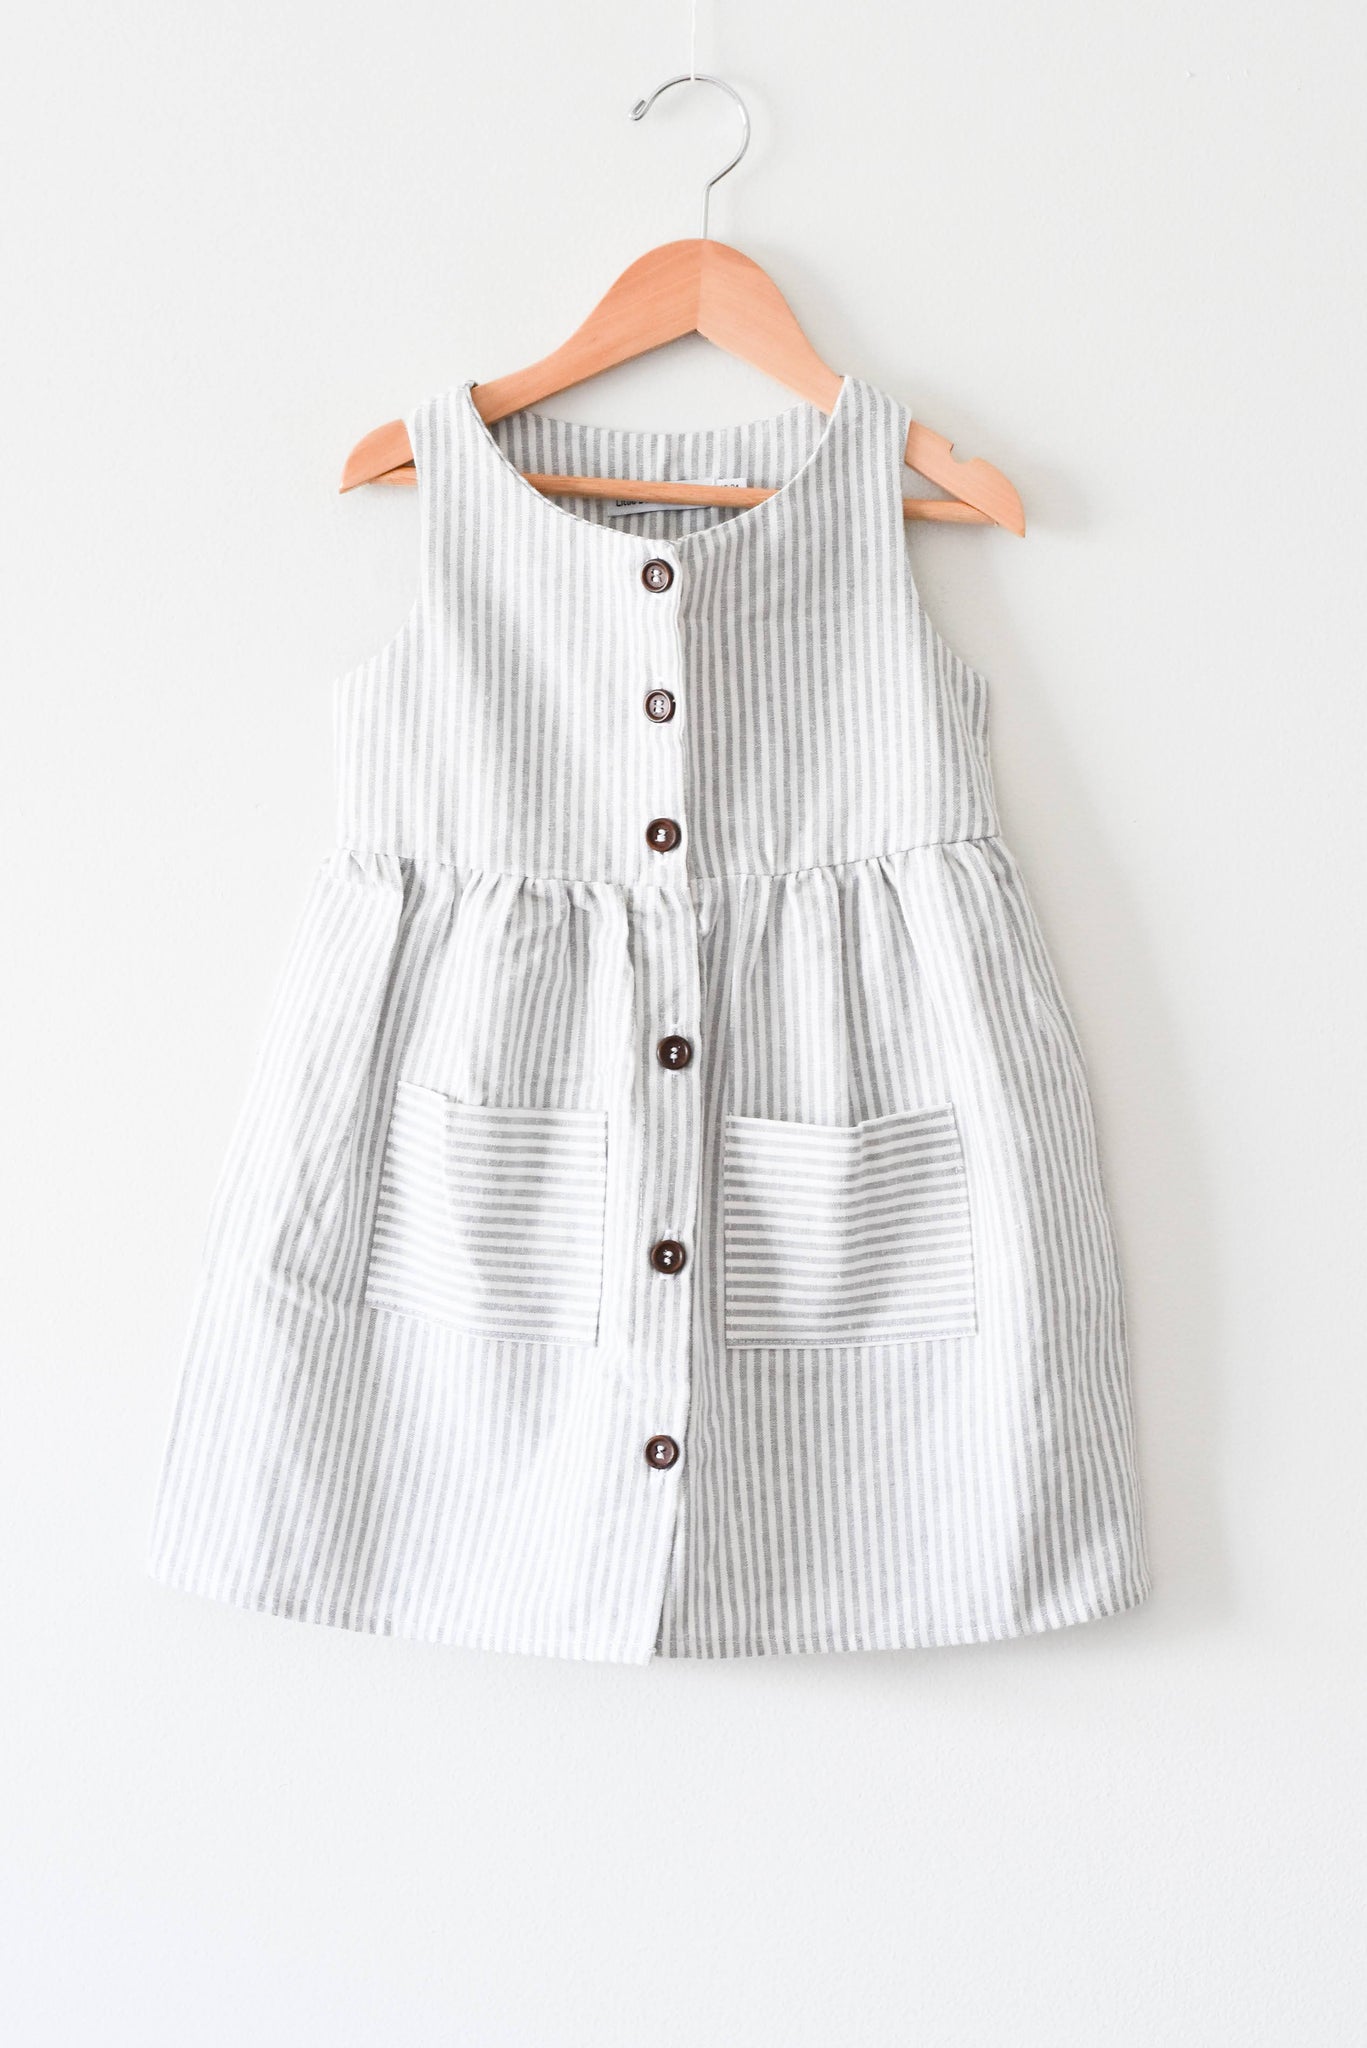 NEW Little Deer Handmade Linen Dress • 18-24 months